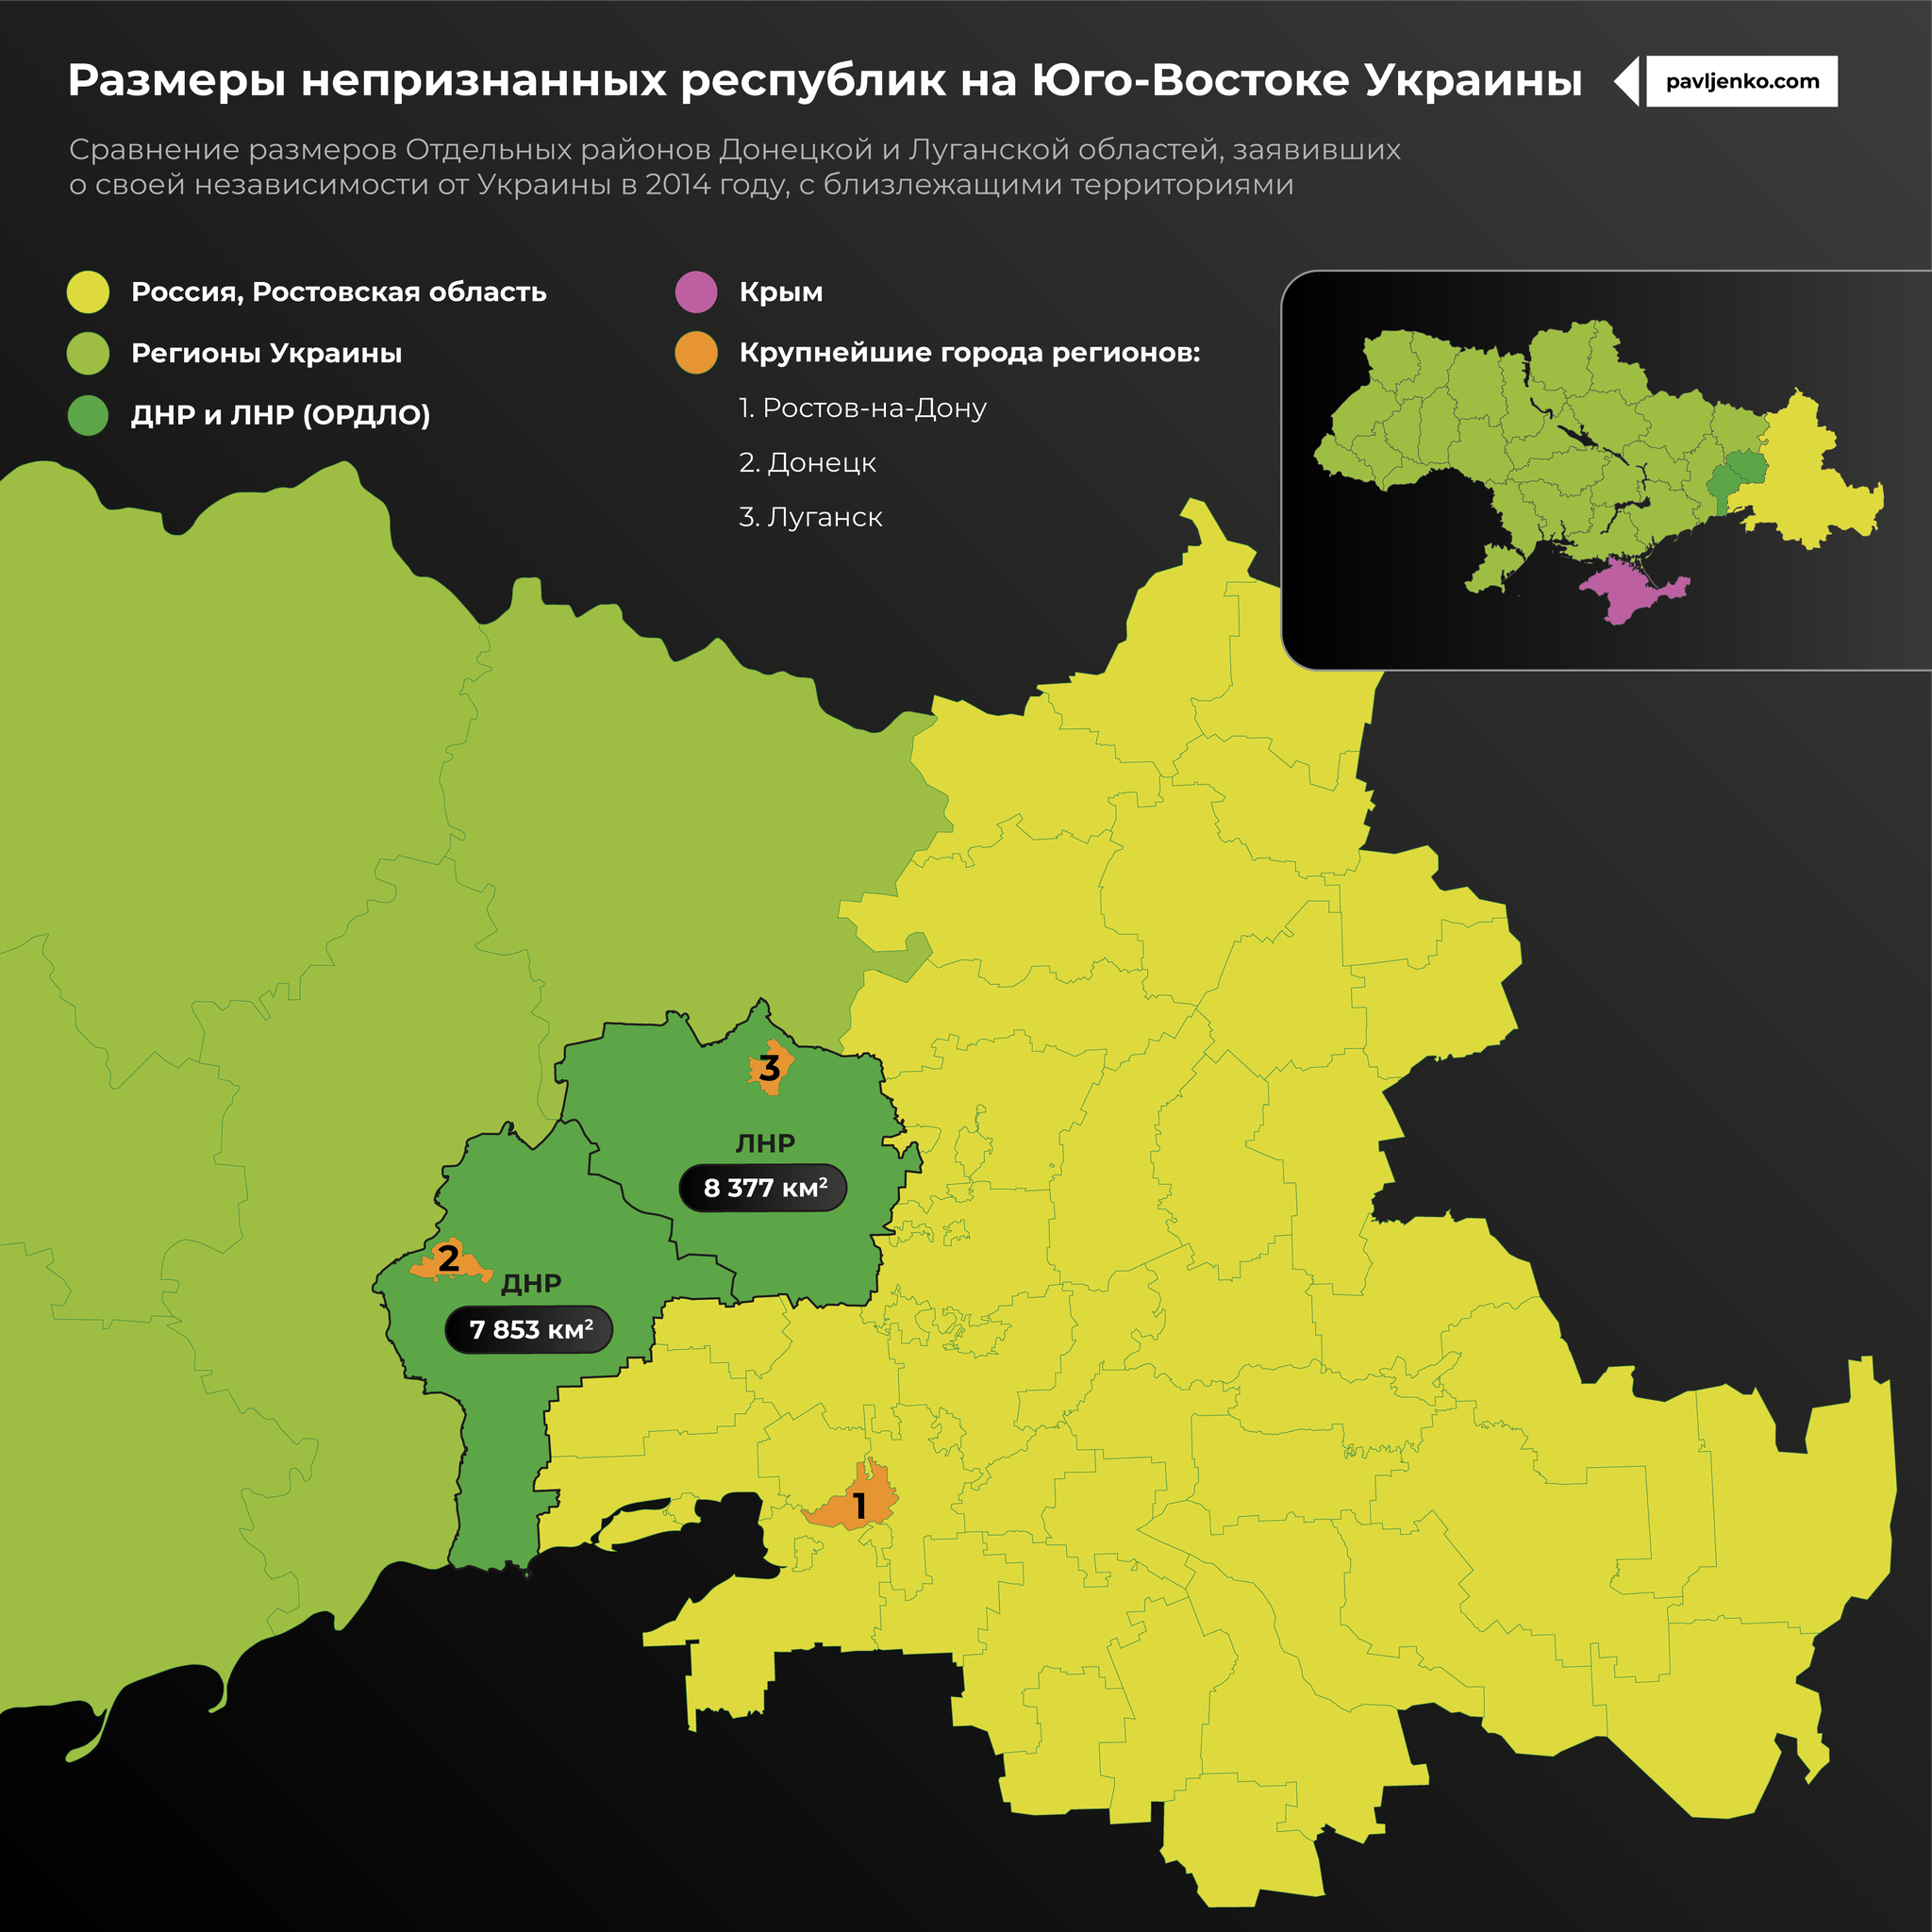 Размеры непризнанных республик на Юго-Востоке Украины